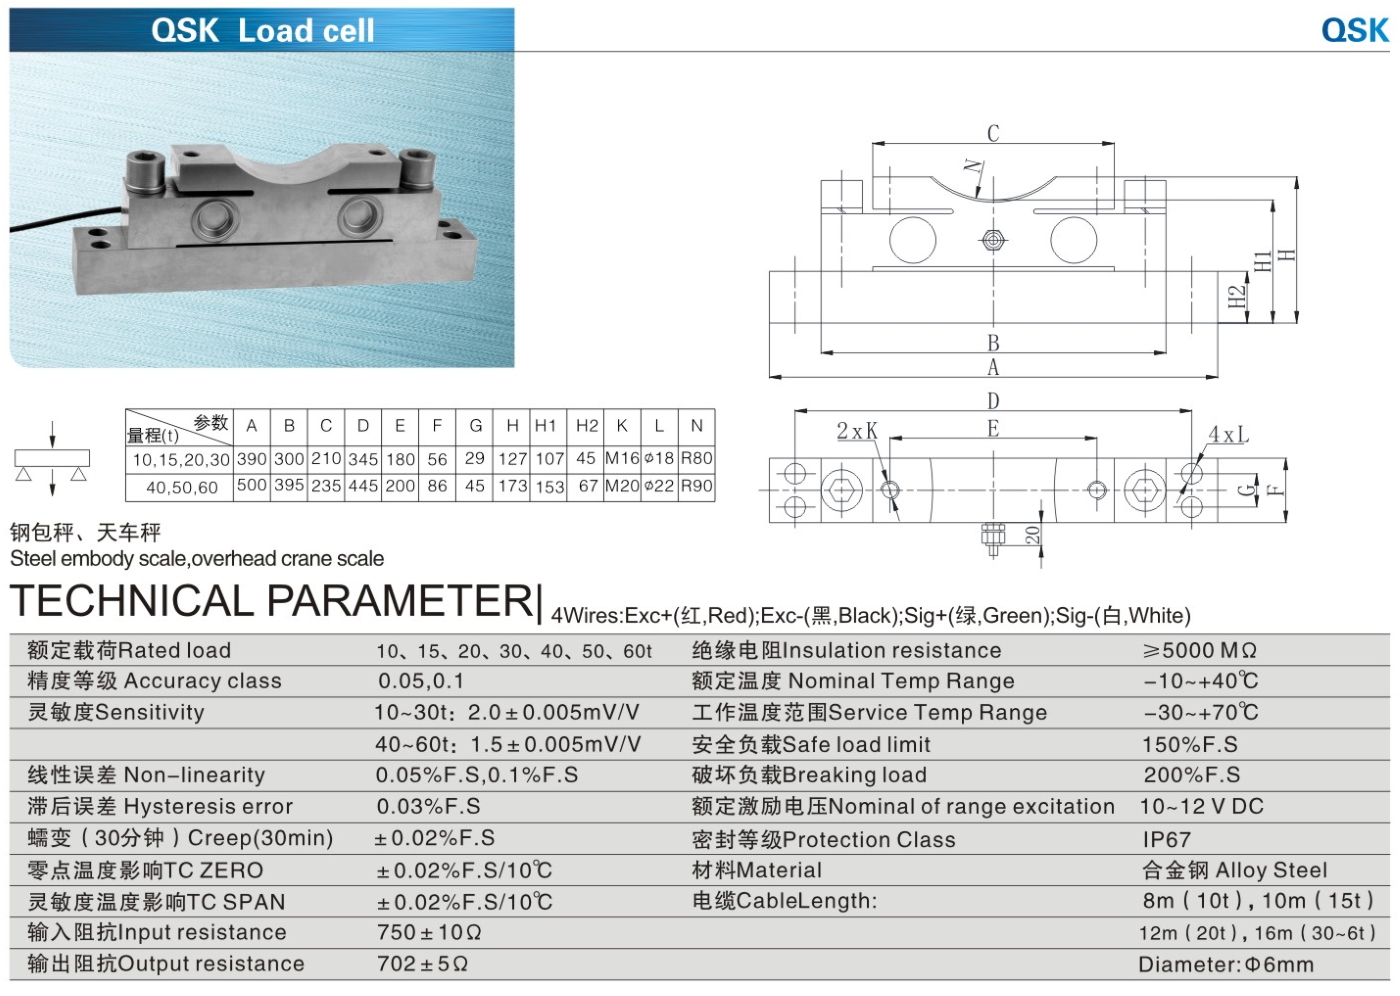 img/loadcell-images/double-ended-shear-beam/KELI_QSK_Loadcell-TTM_Teknoloji.jpg